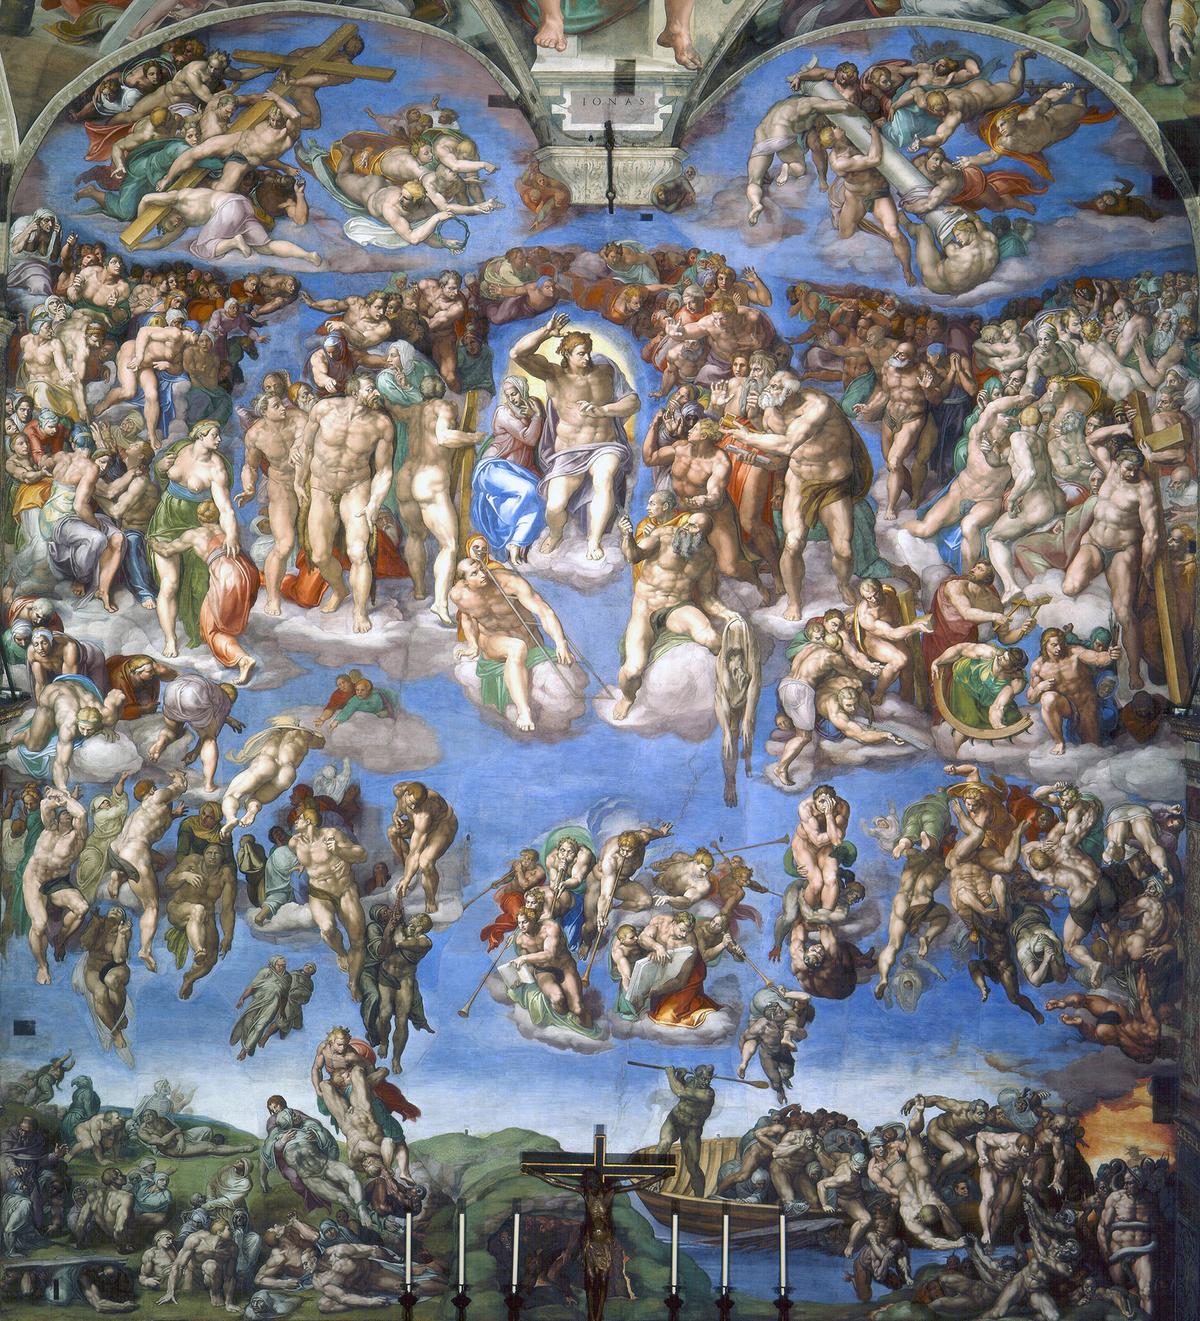 The Last Judgment by Michelangelo c.1536-1541. Fresco. Sistine Chapel, Vatican City (public domain)